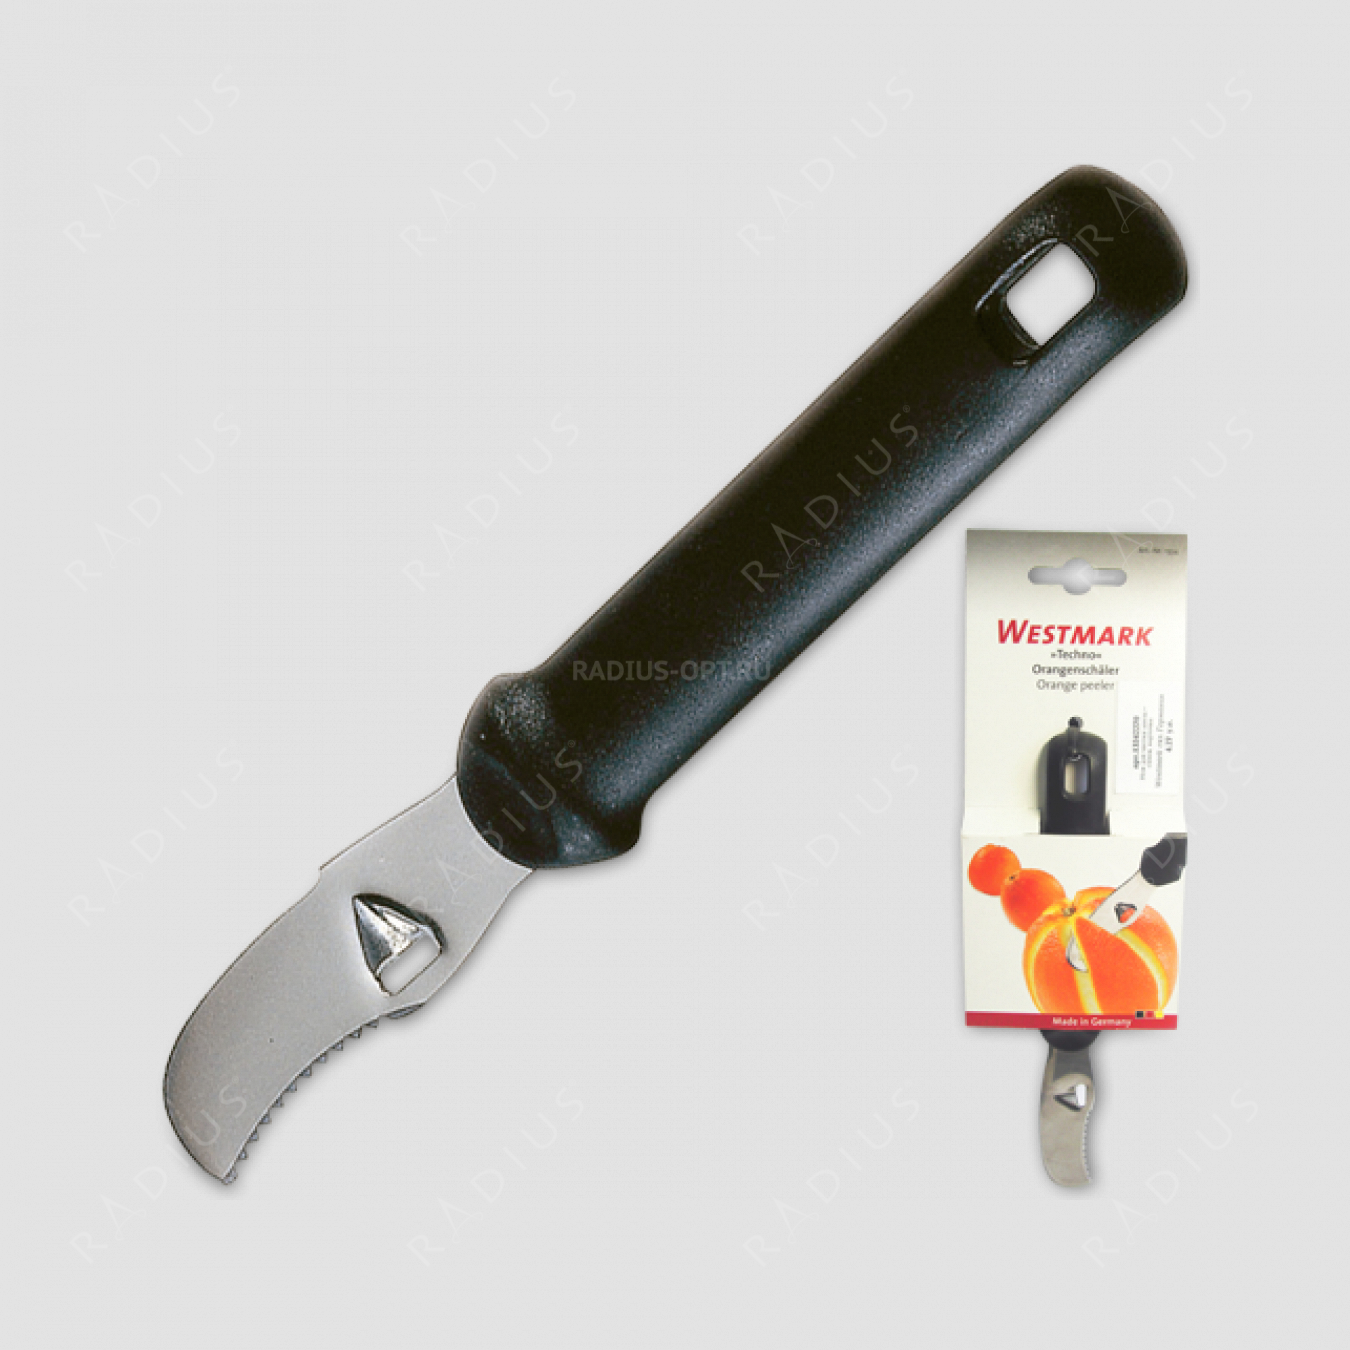 Нож для чистки апельсинов, серия Techno, WESTMARK, Германия